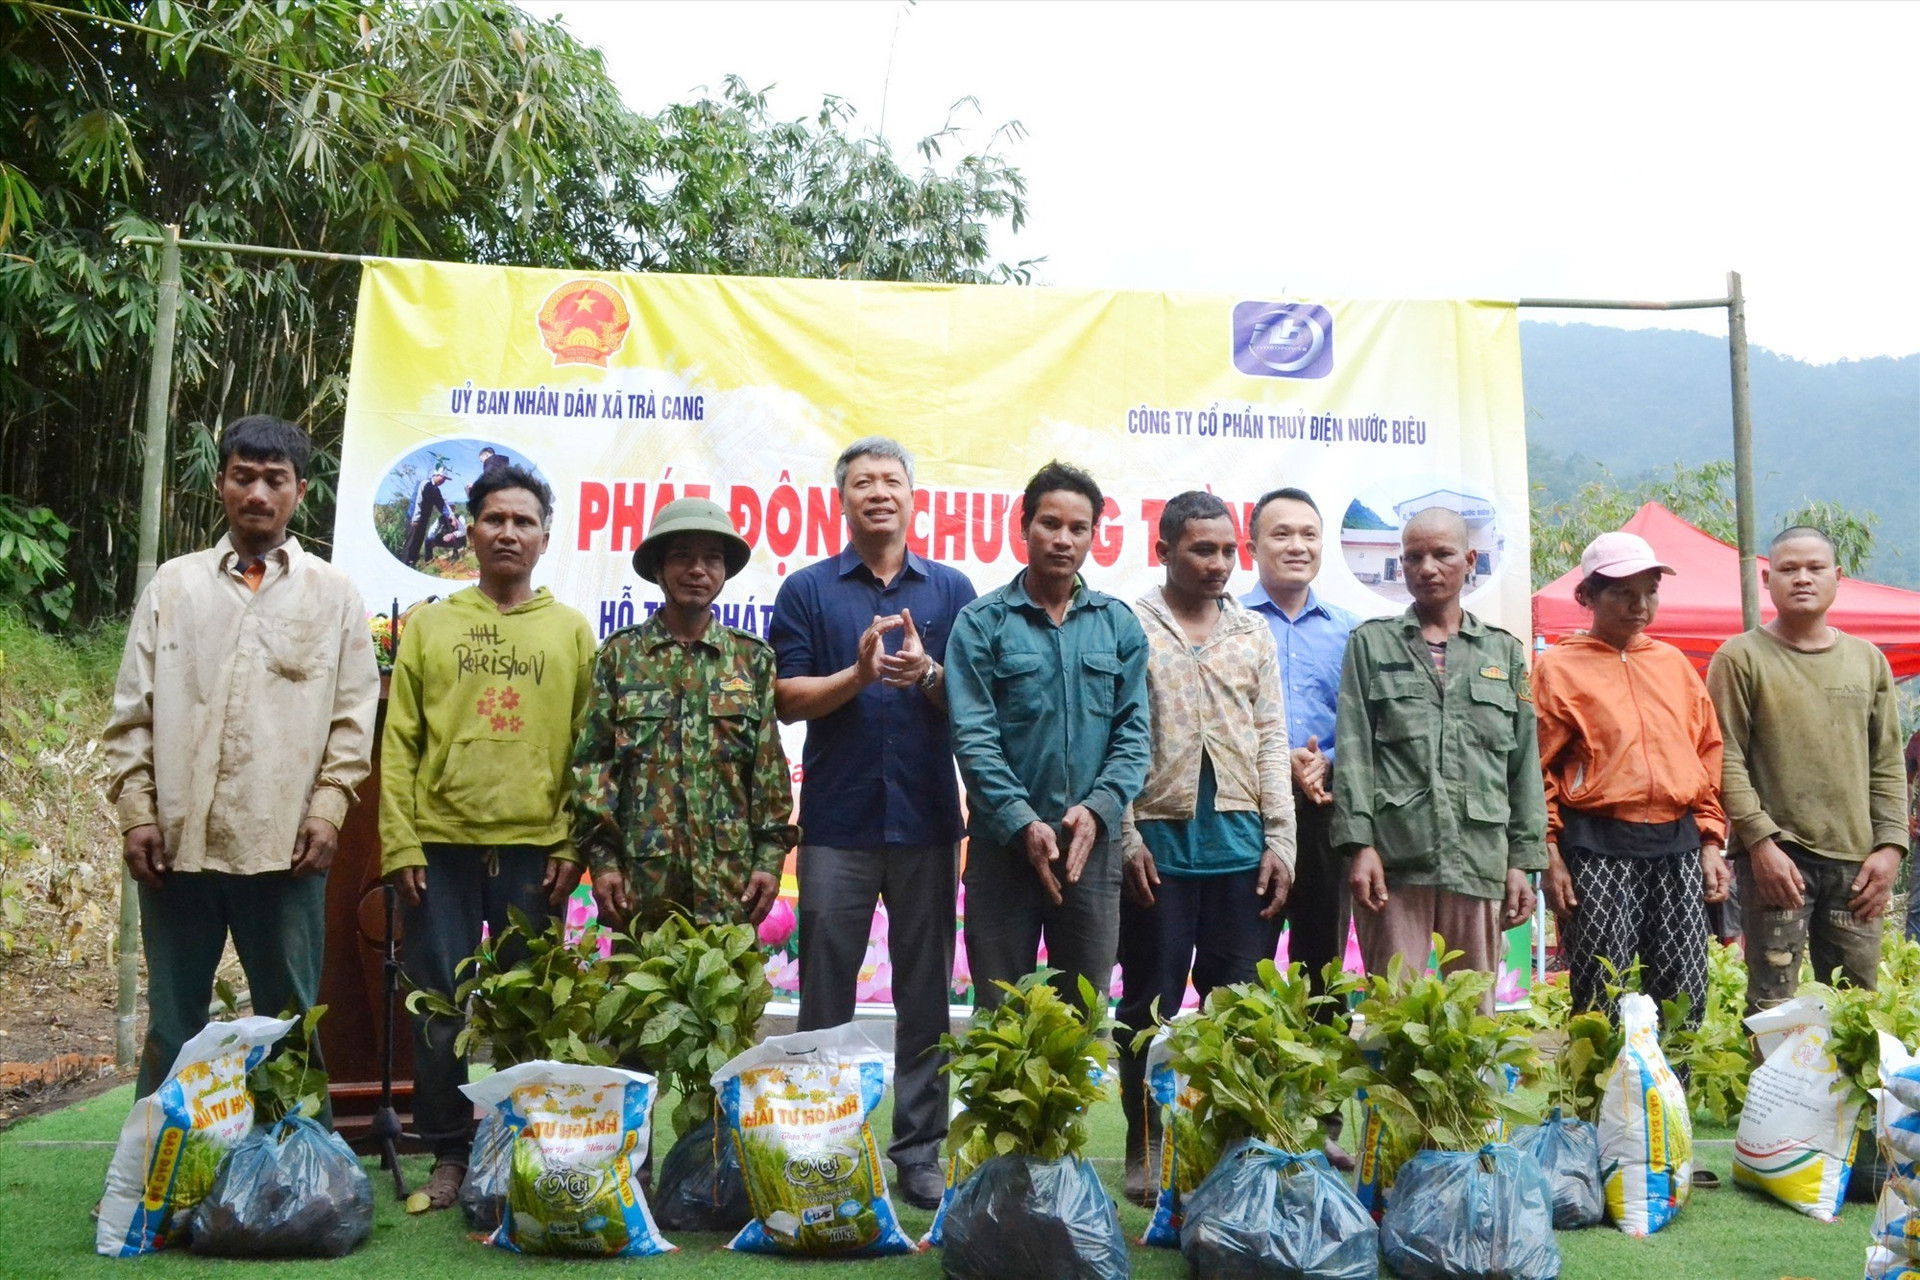 Phó Chủ tịch UBND tỉnh Hồ Quang Bửu và ông Nguyễn Minh Dũng trao gạo và cây giống cho các hộ dân thôn 3 xã Trà Cang. Ảnh: Q.VIỆT